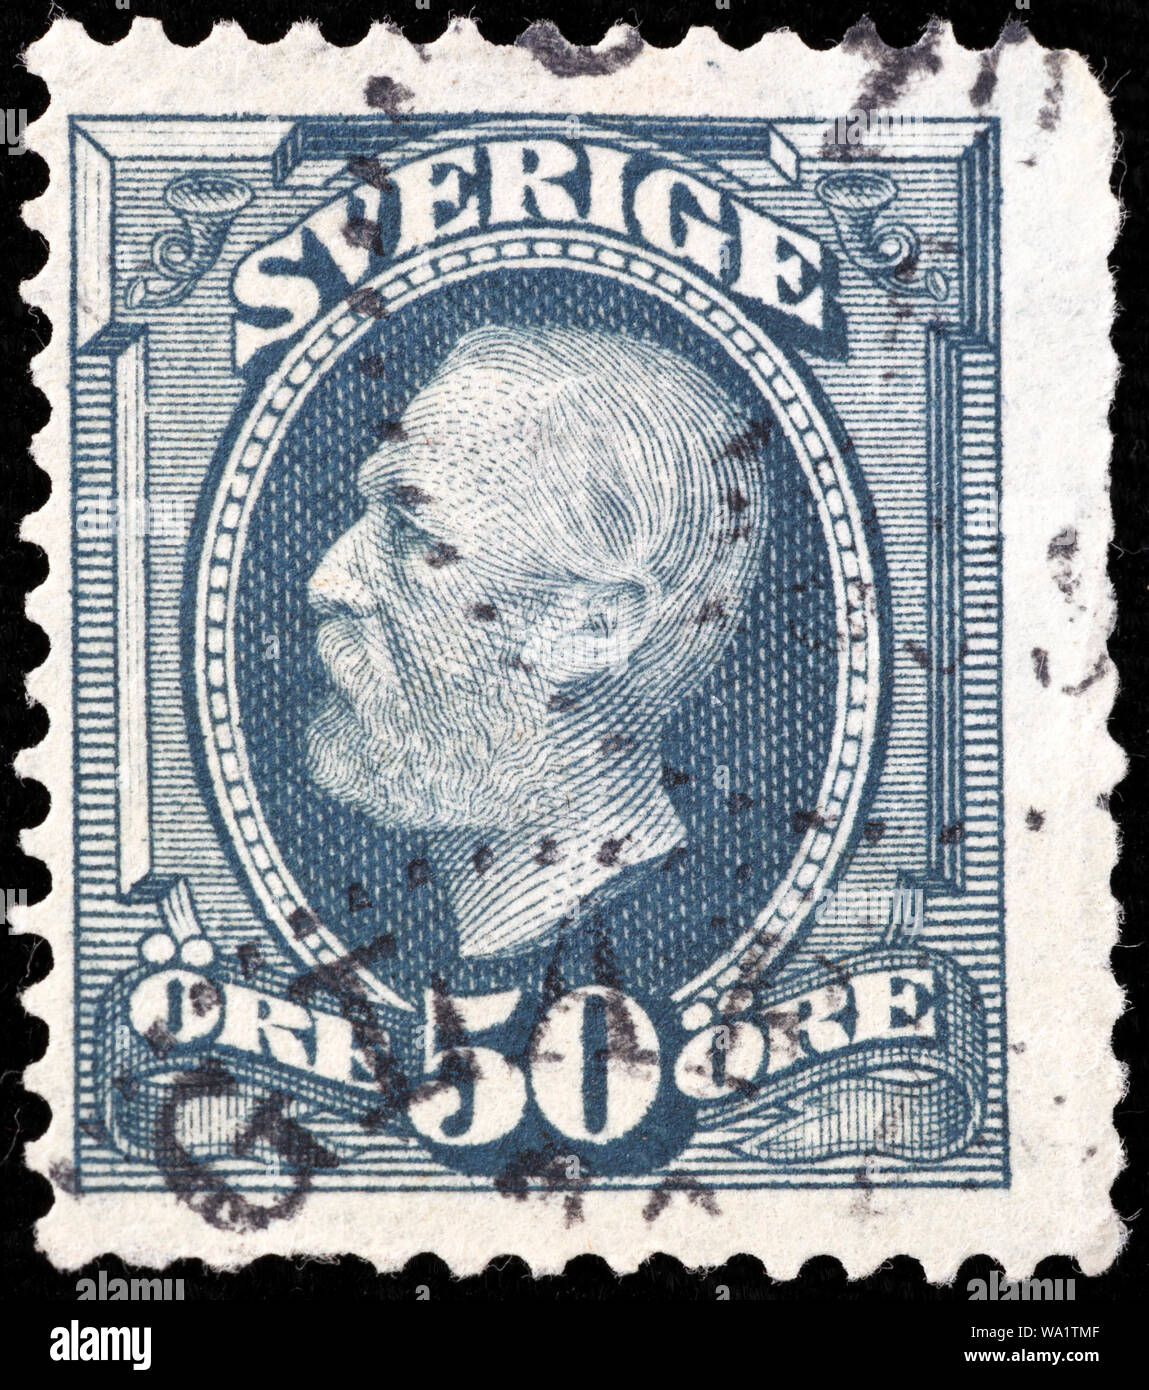 Oscar II, Rey de Suecia y Noruega (1872-1907), sello, Suecia, 1898 Foto de stock